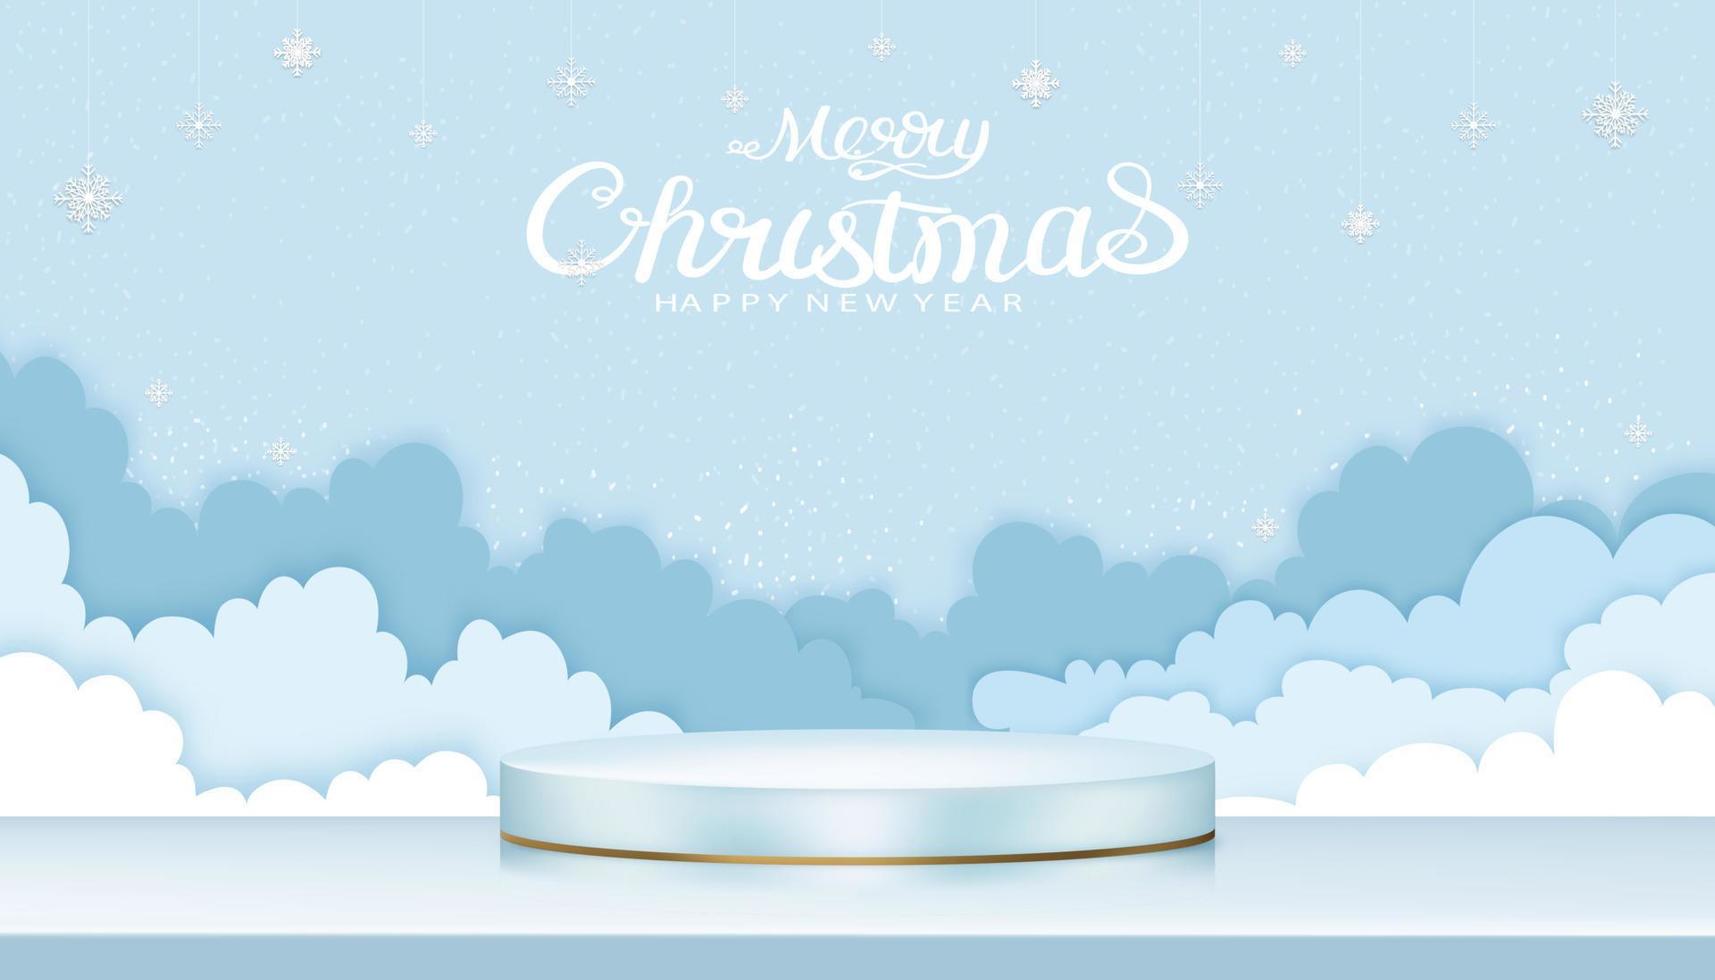 frohe weihnachten hintergrund mit 3d-anzeige zylinderform und papier geschnittene wolkengebilde mit schneeflockendekoration auf blauem himmel, vektorillustration für weihnachts- oder neujahrsbanner oder grußkarte vektor